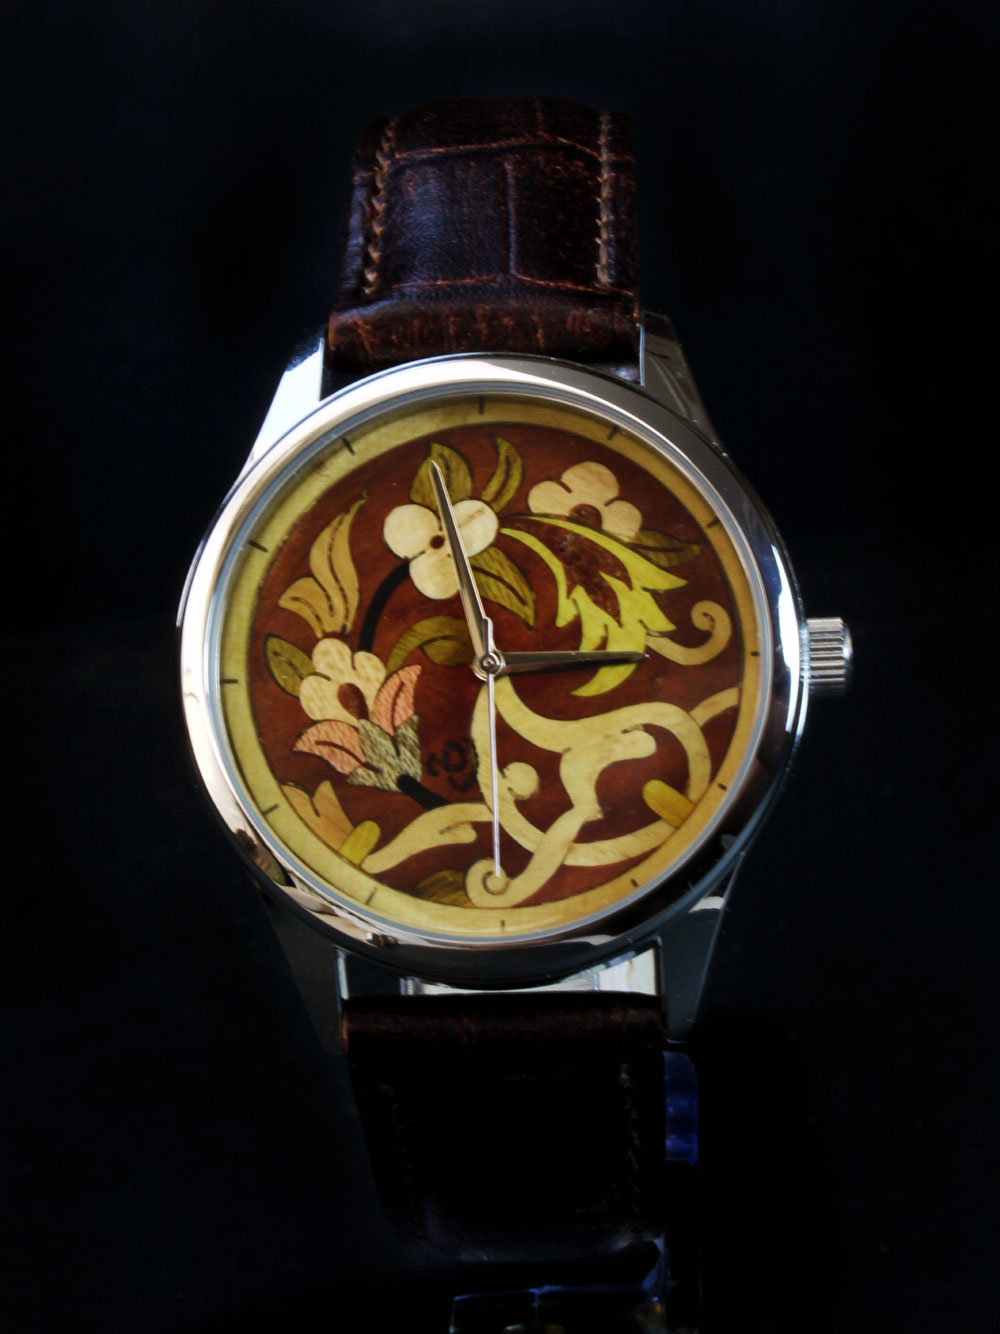 The first wooden art watch